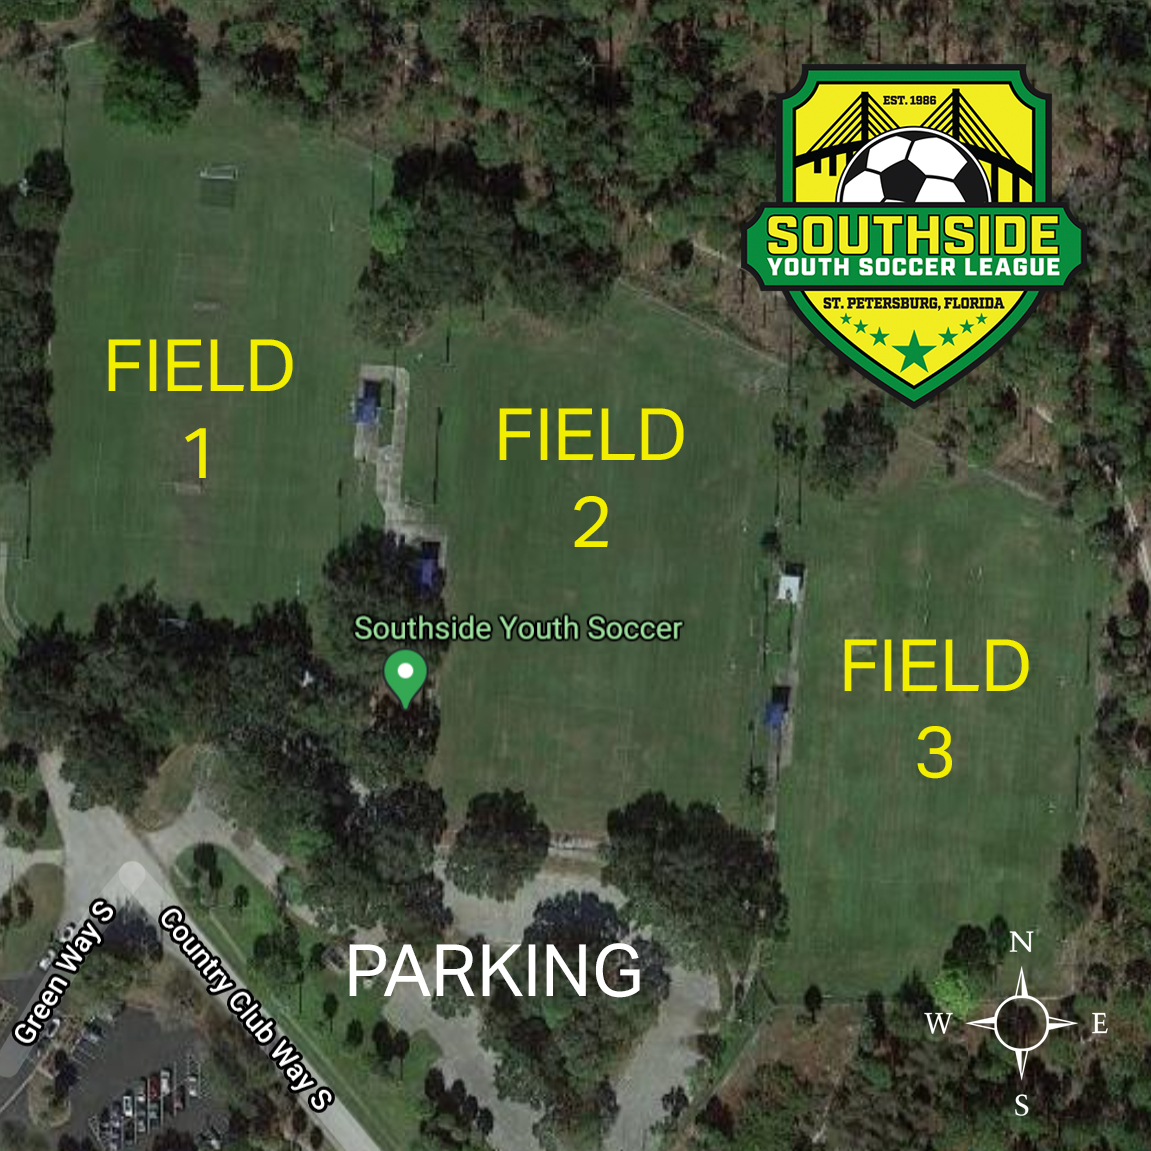 Field 1 on west side, field 2 in the middle, field 3 on east side